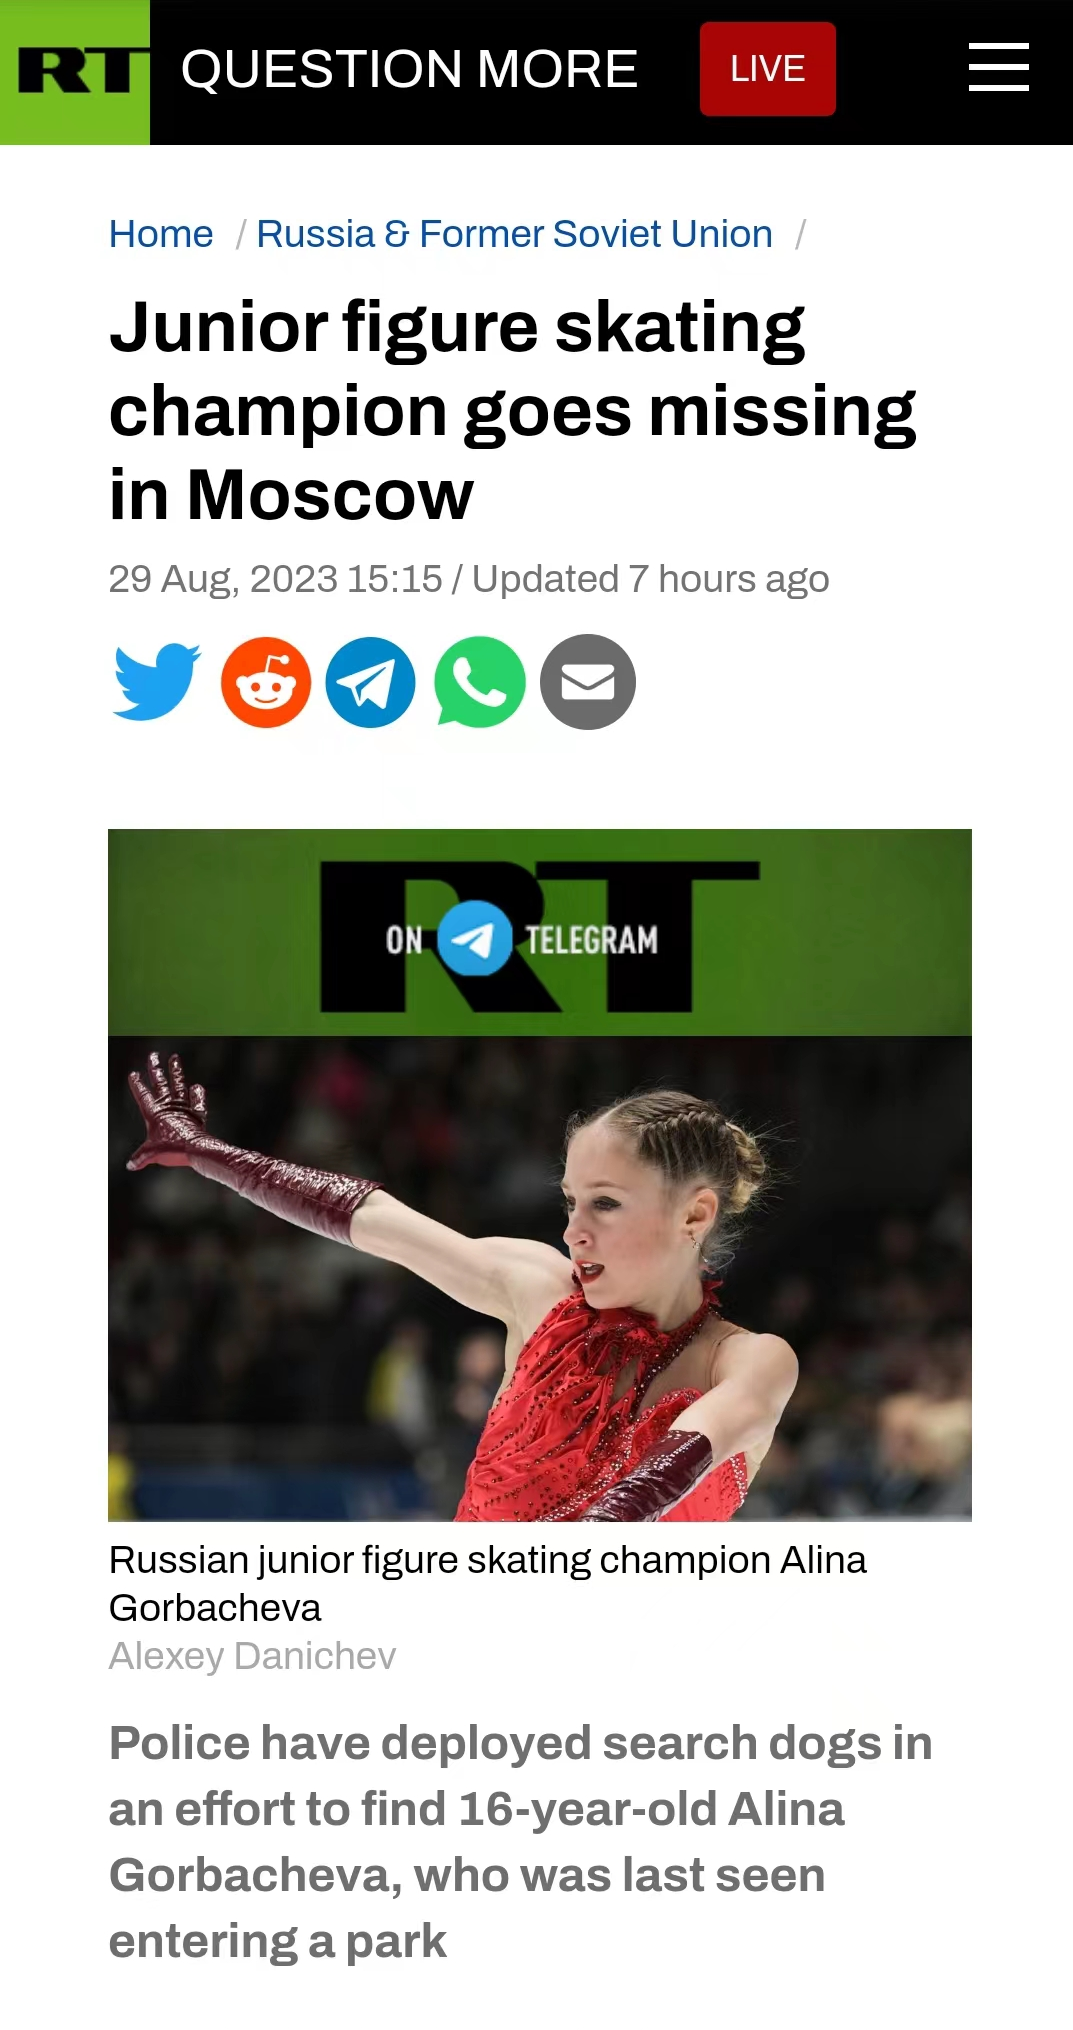 俄罗斯花滑运动员戈尔巴乔娃失踪